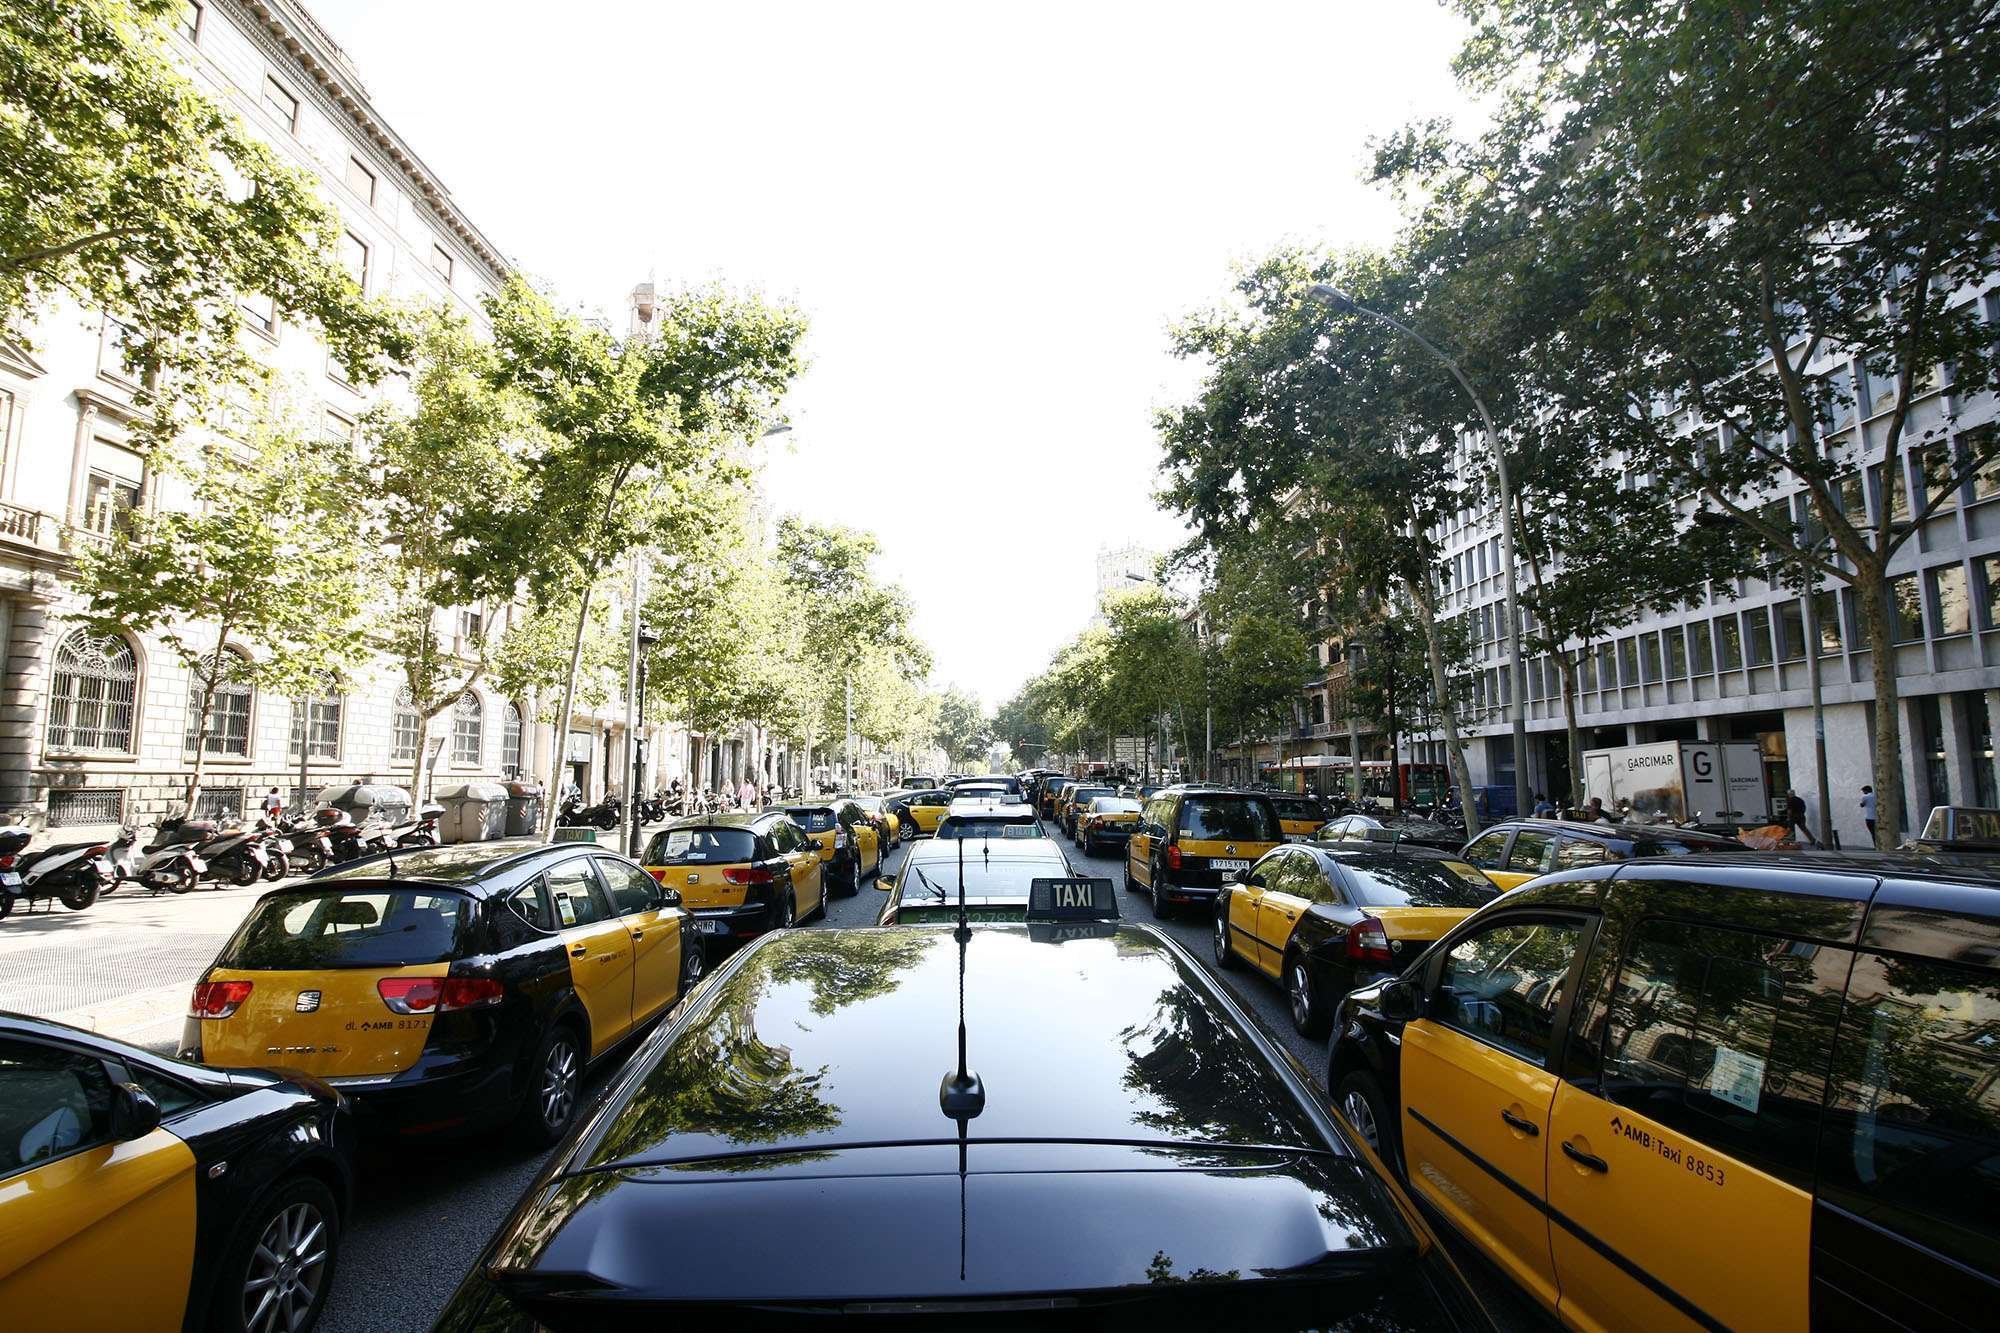 Fotografie od Miroslavo: Taxikáři stávkují v Barceloně